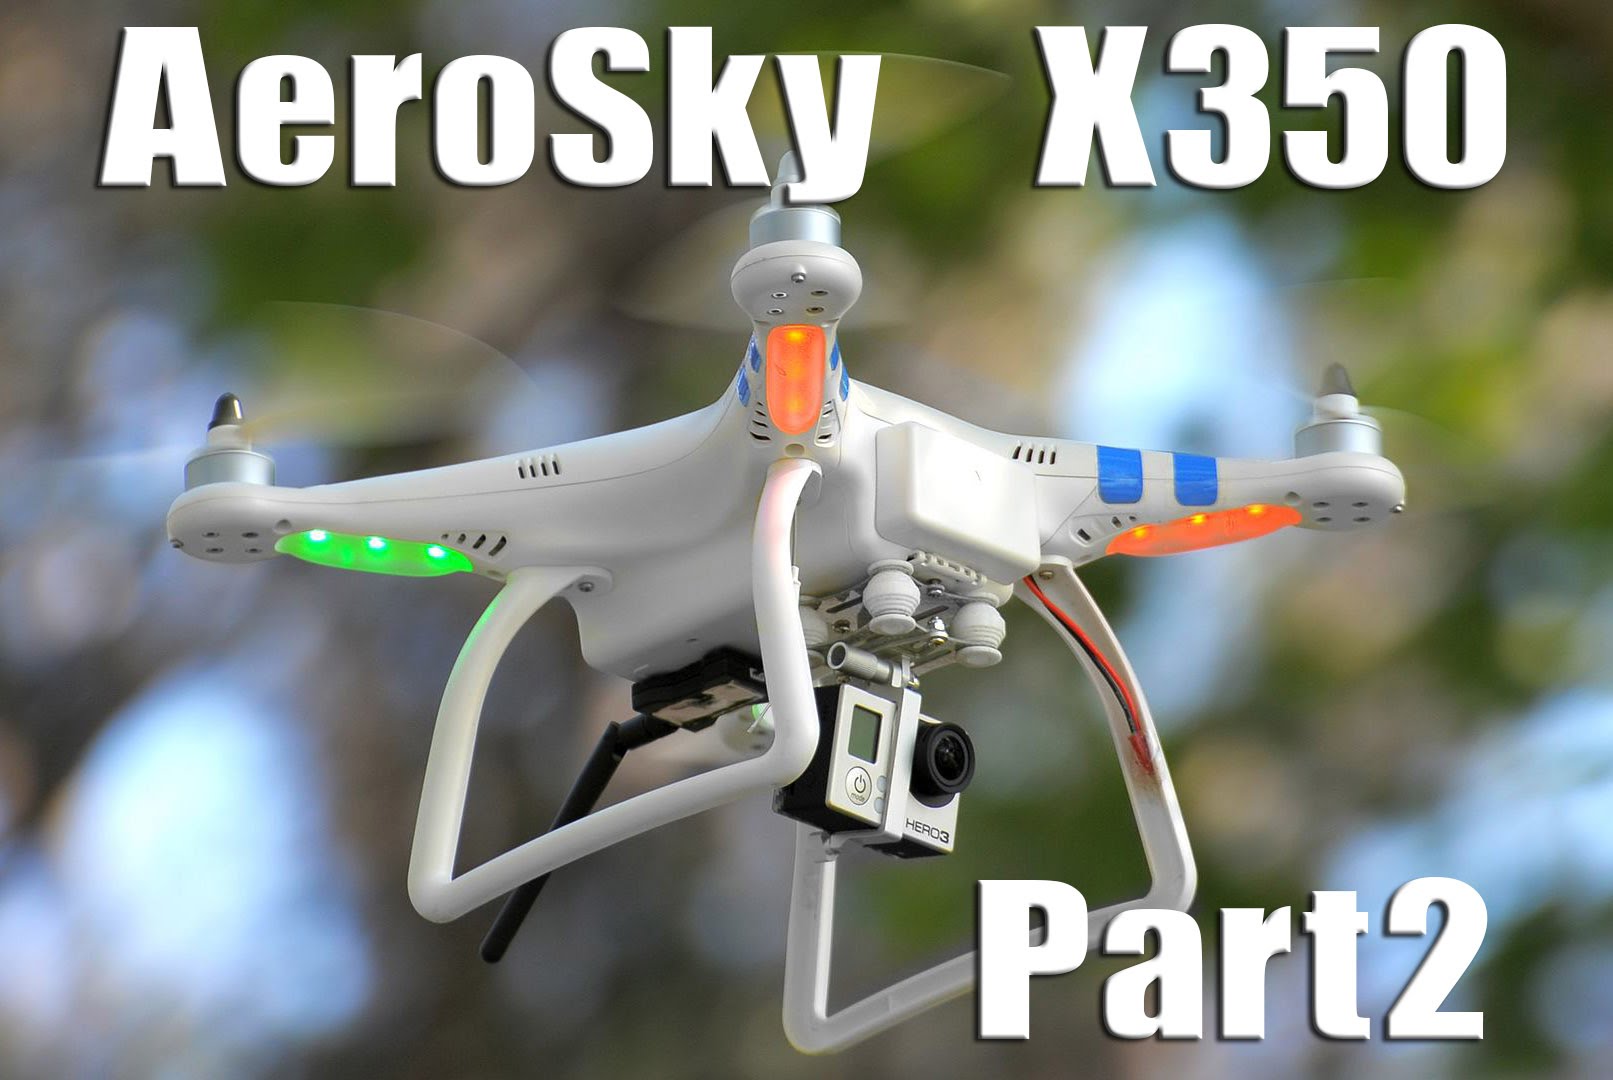 Aerosky X350 Quadcopter Drone w/ GPS Part 2